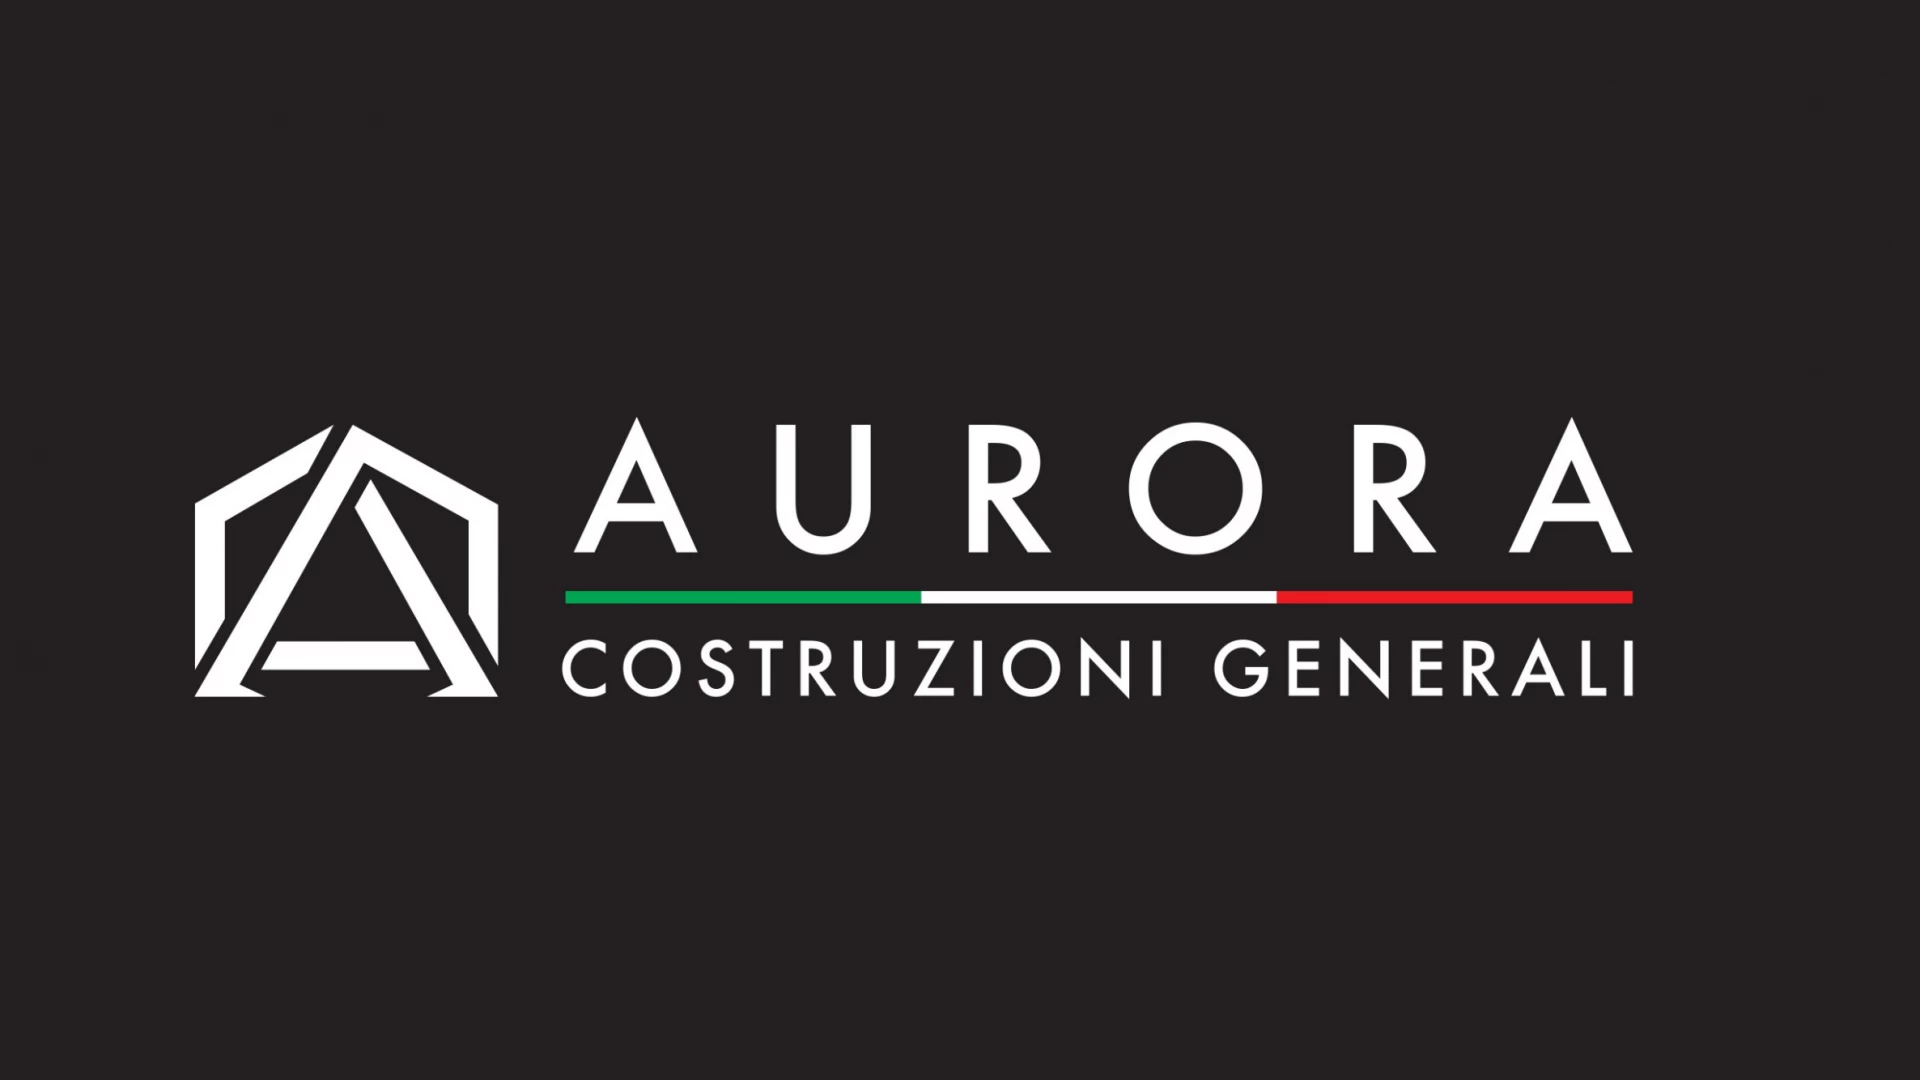 Castel Di Sangro: Aurora Costruzioni Generali, numerosi i servizi offerti a tutti i clienti. Consulta il sito web aziendale per conoscerne di più.